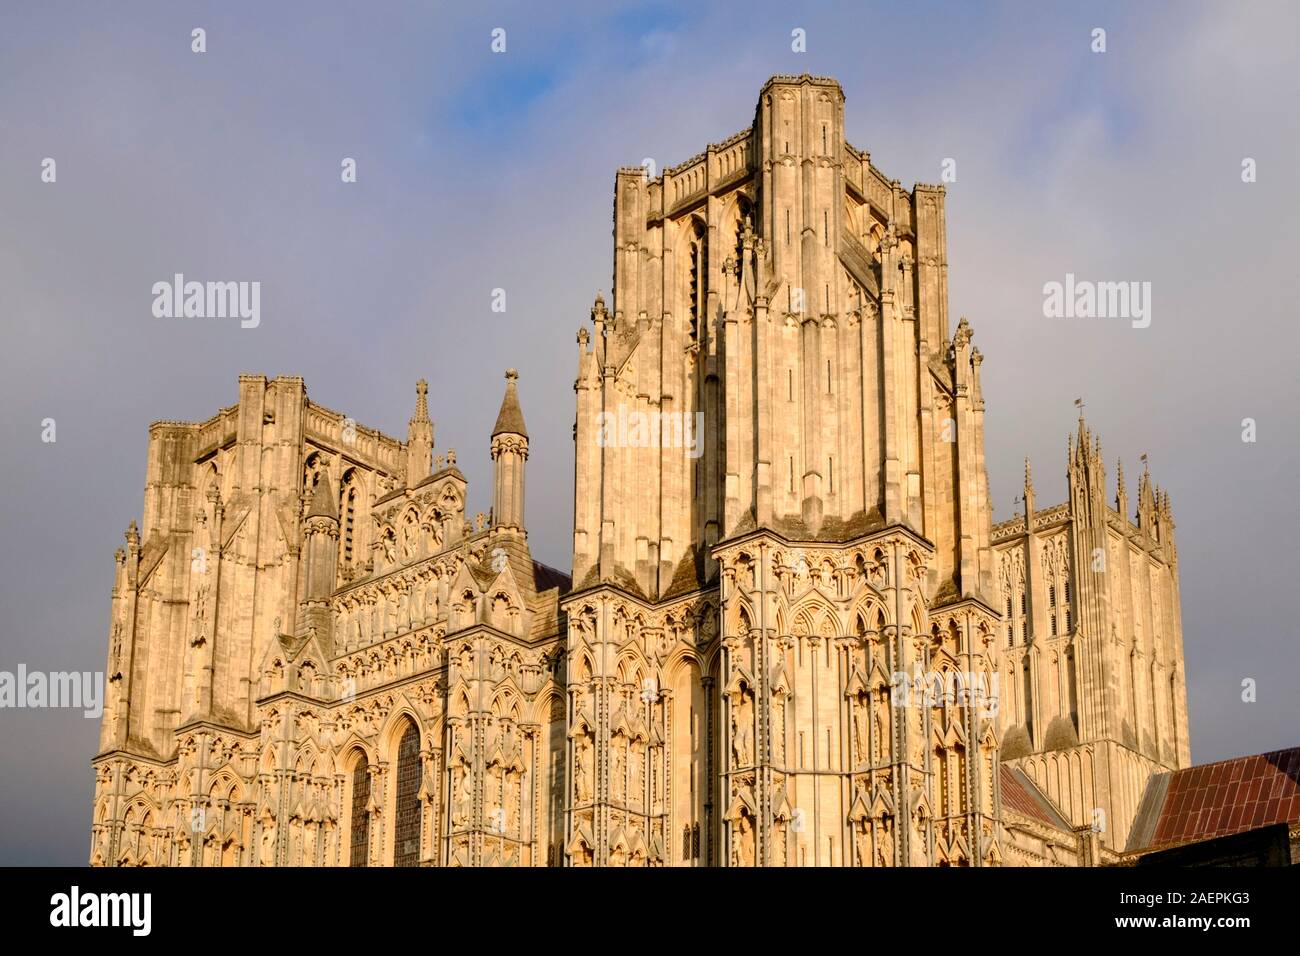 Die Kathedrale von Wells ist eine Stadt im Somerset UK die Kathedrale im Winter Sonne gegen einen dunklen Himmel; frühe englische Gotik. Stockfoto